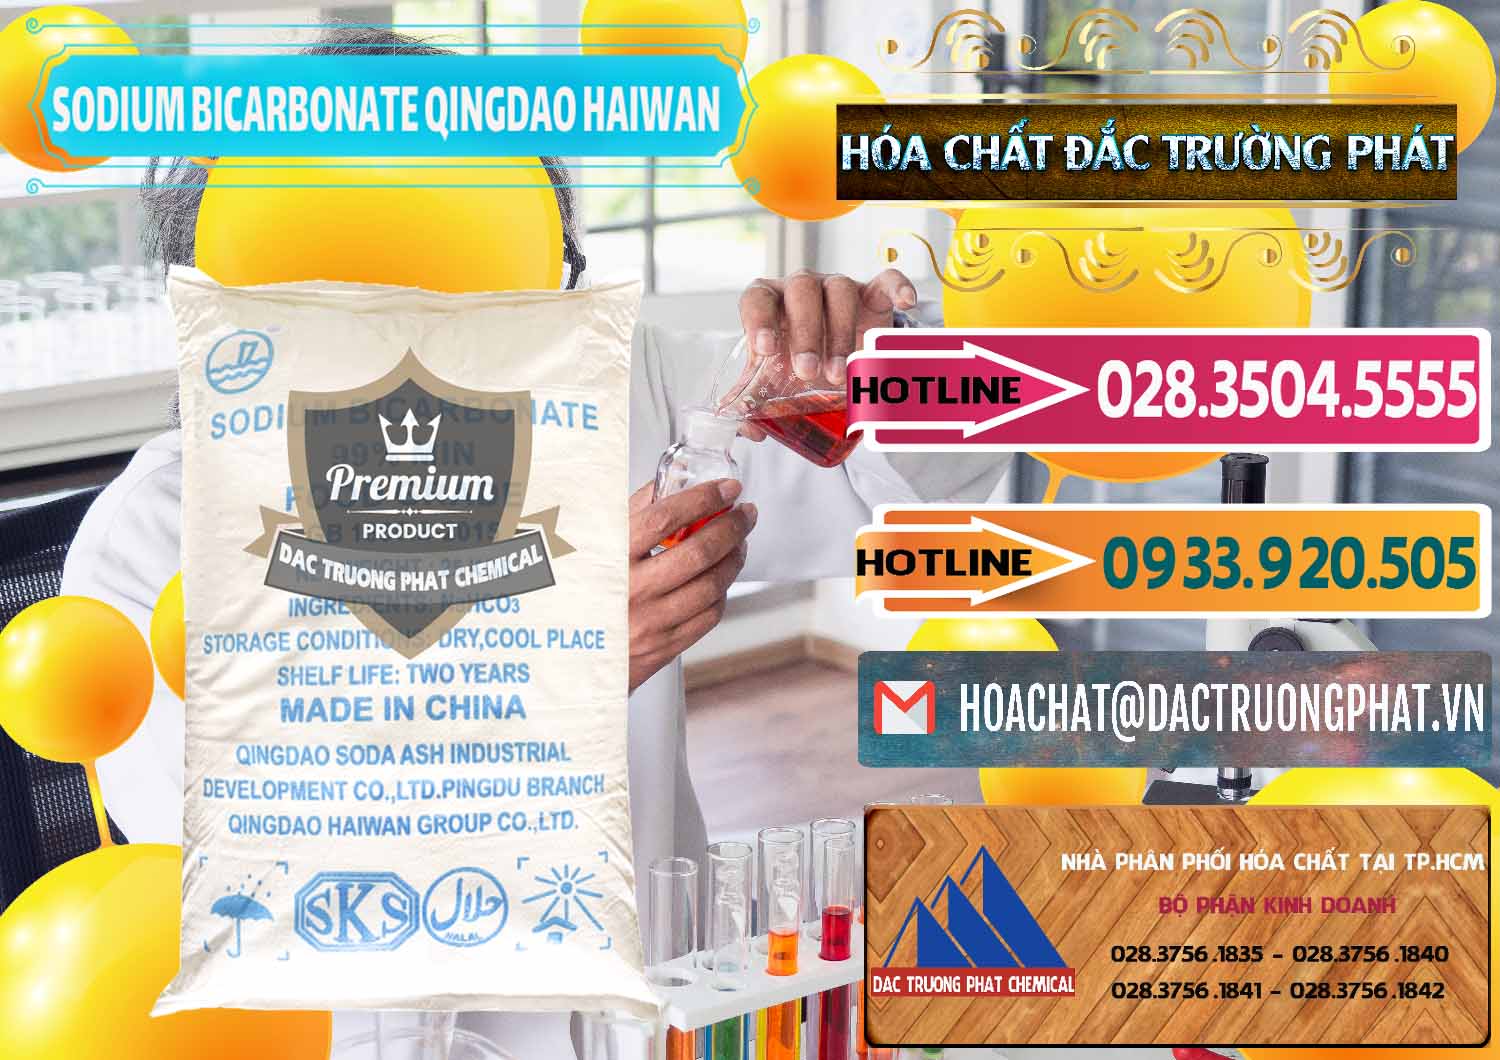 Nơi chuyên nhập khẩu - bán Sodium Bicarbonate – Bicar NaHCO3 Food Grade Qingdao Haiwan Trung Quốc China - 0258 - Cty chuyên cung cấp - kinh doanh hóa chất tại TP.HCM - dactruongphat.vn